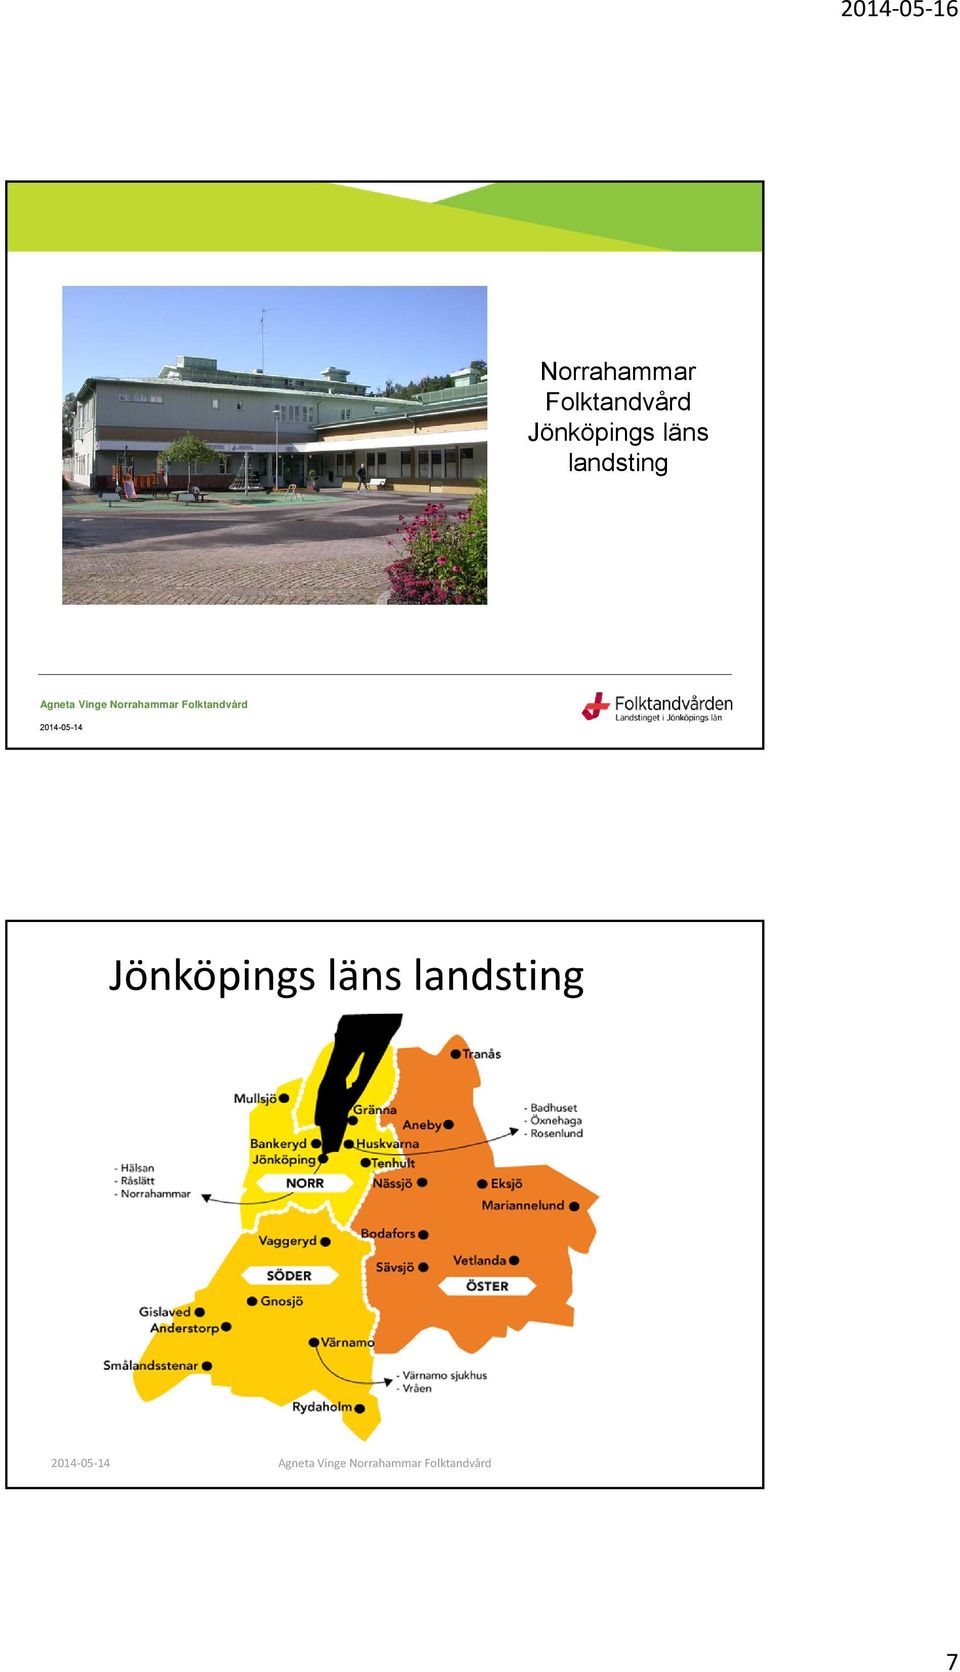 Jönköpings läns